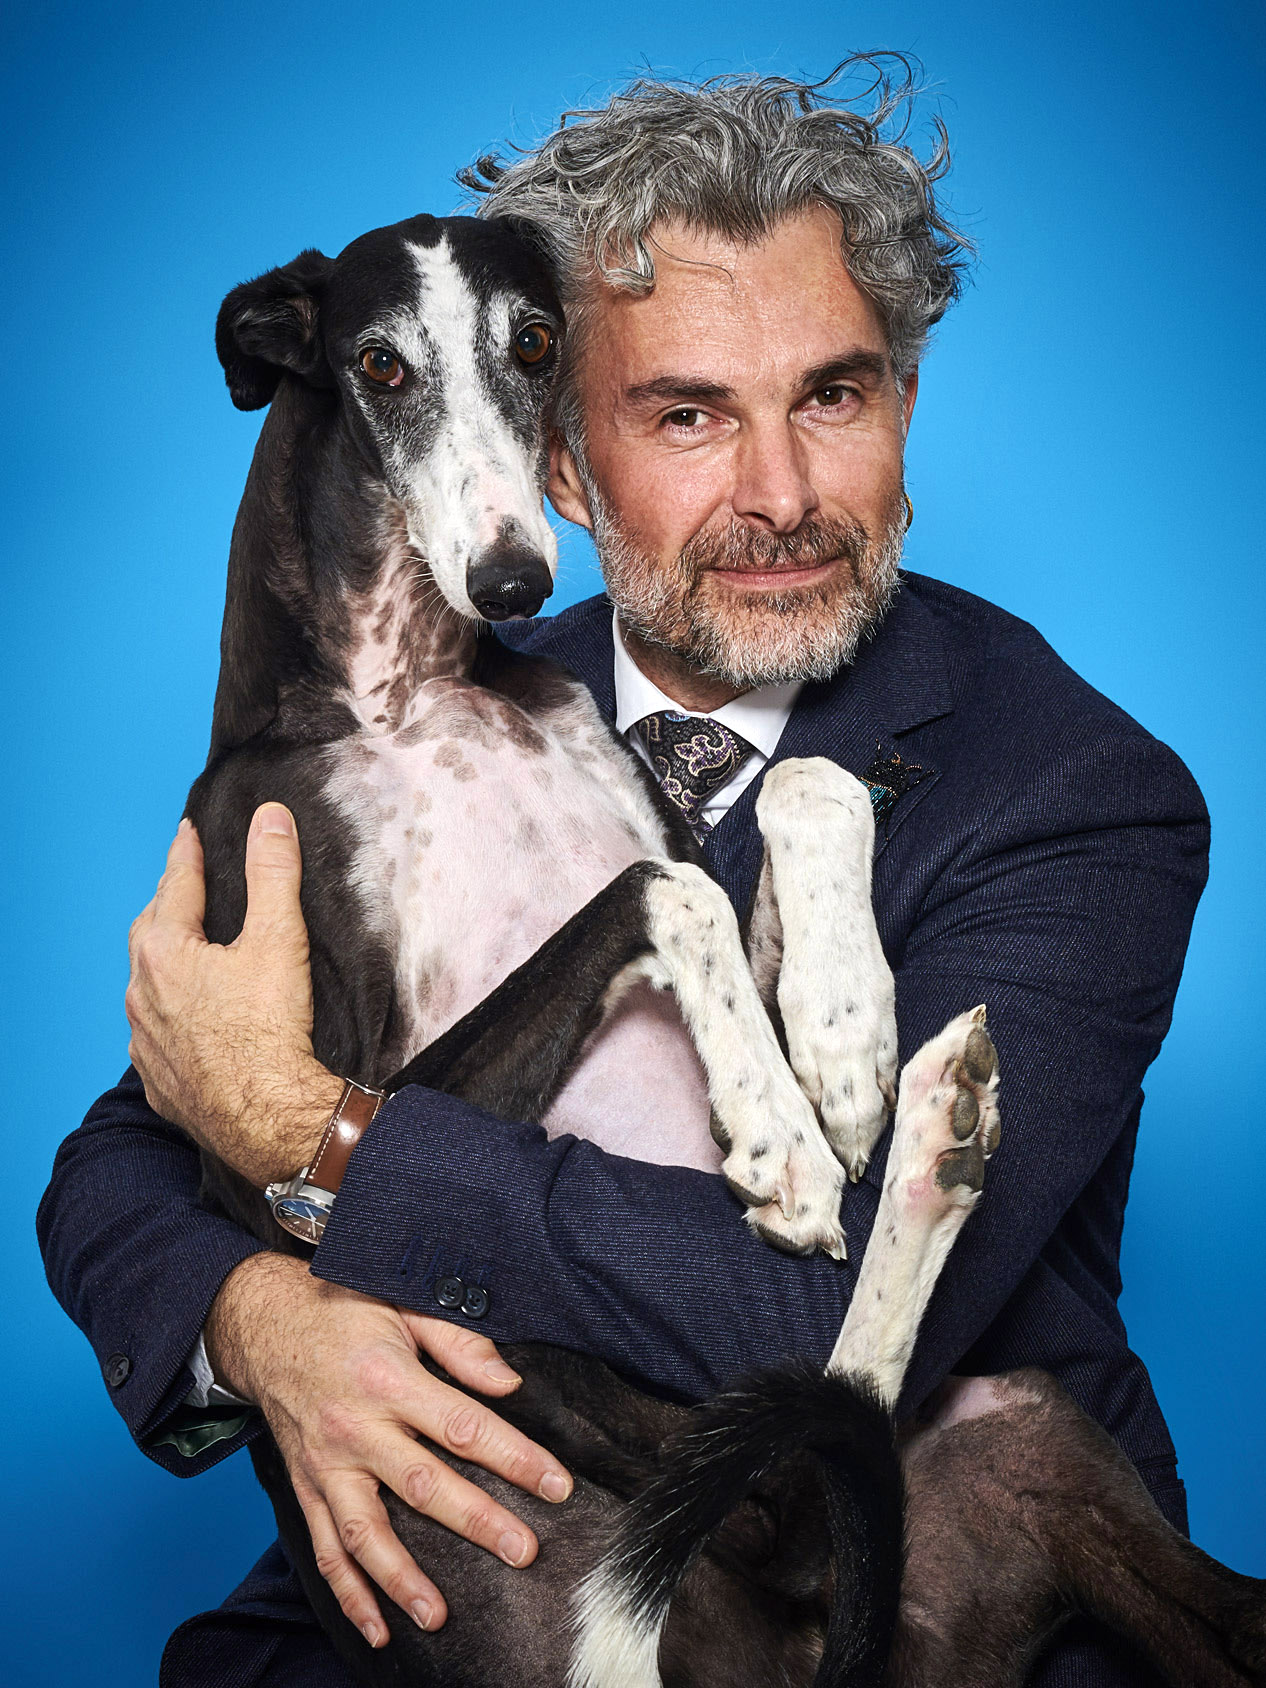 Beitragsbild People,Person mit Hund im Arm, blauer Hintergrund, schmunzelt in die Kamera, Portrait Fotografie